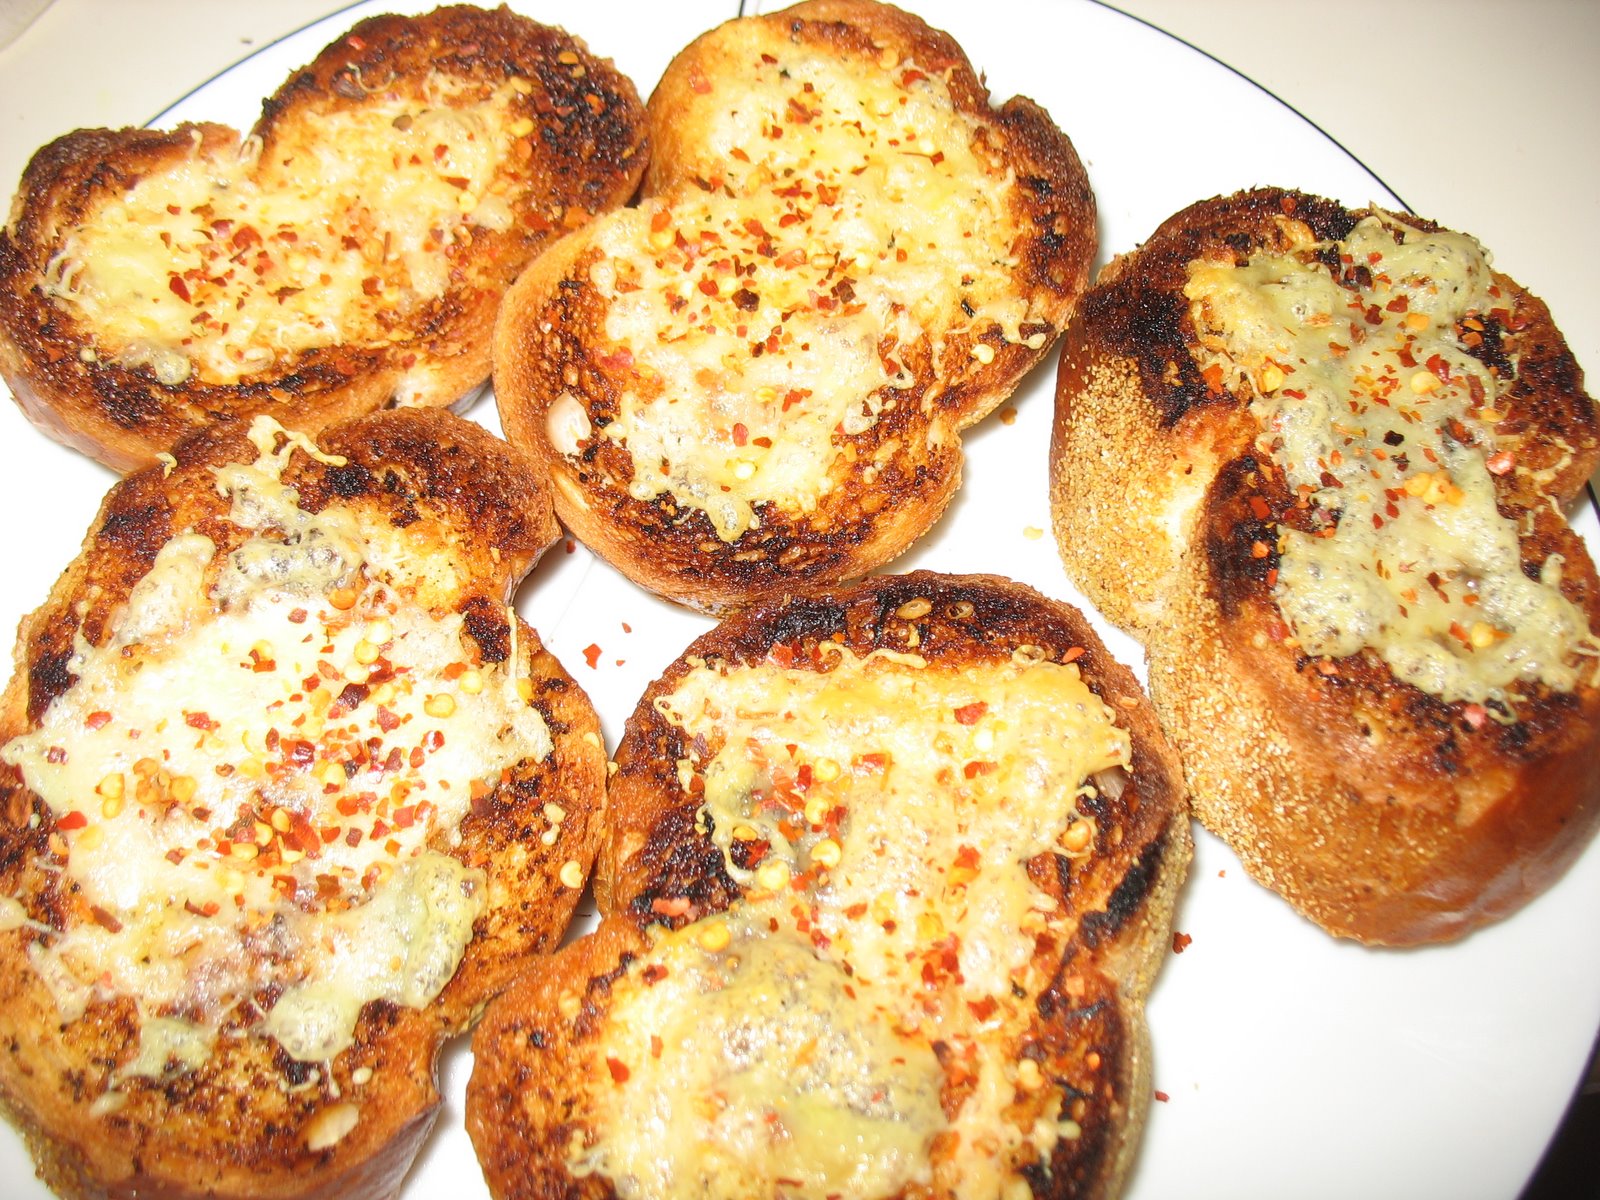 garlic cheese chili toaste